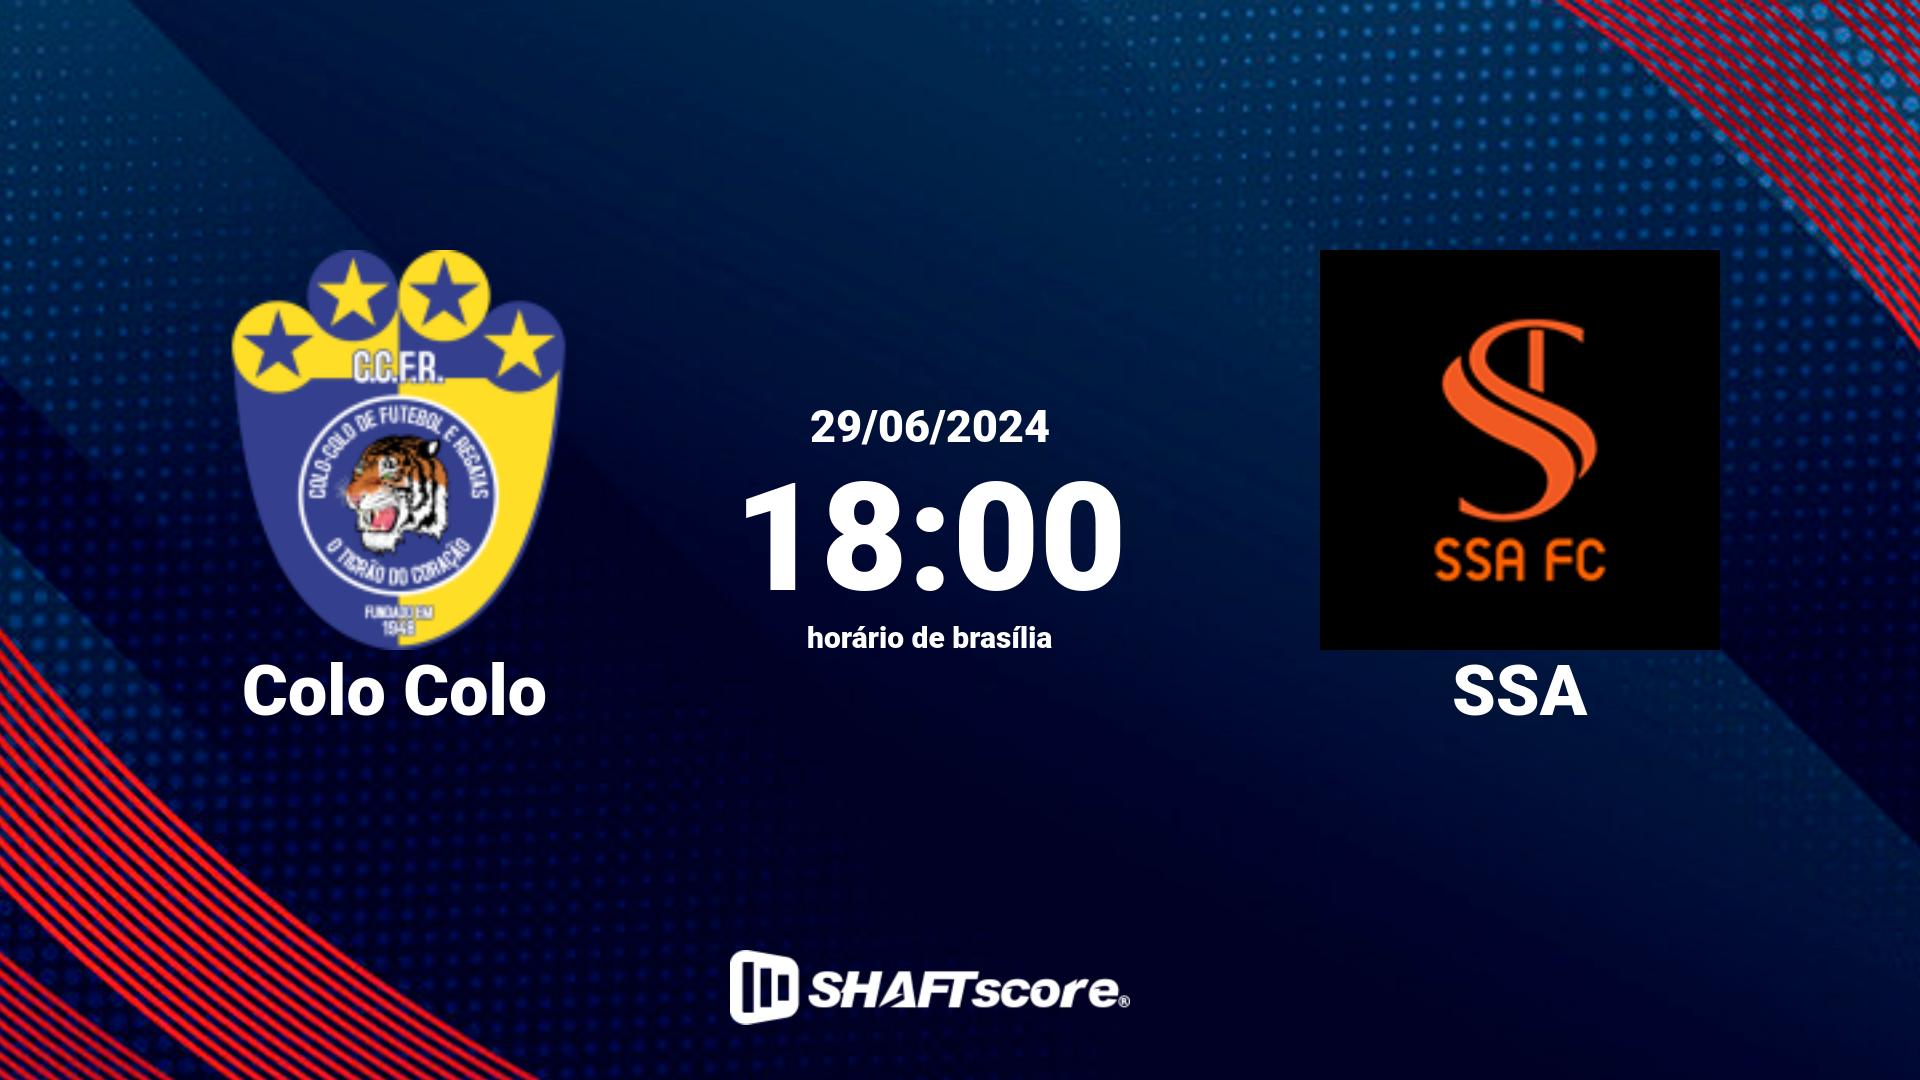 Estatísticas do jogo Colo Colo vs SSA 29.06 18:00